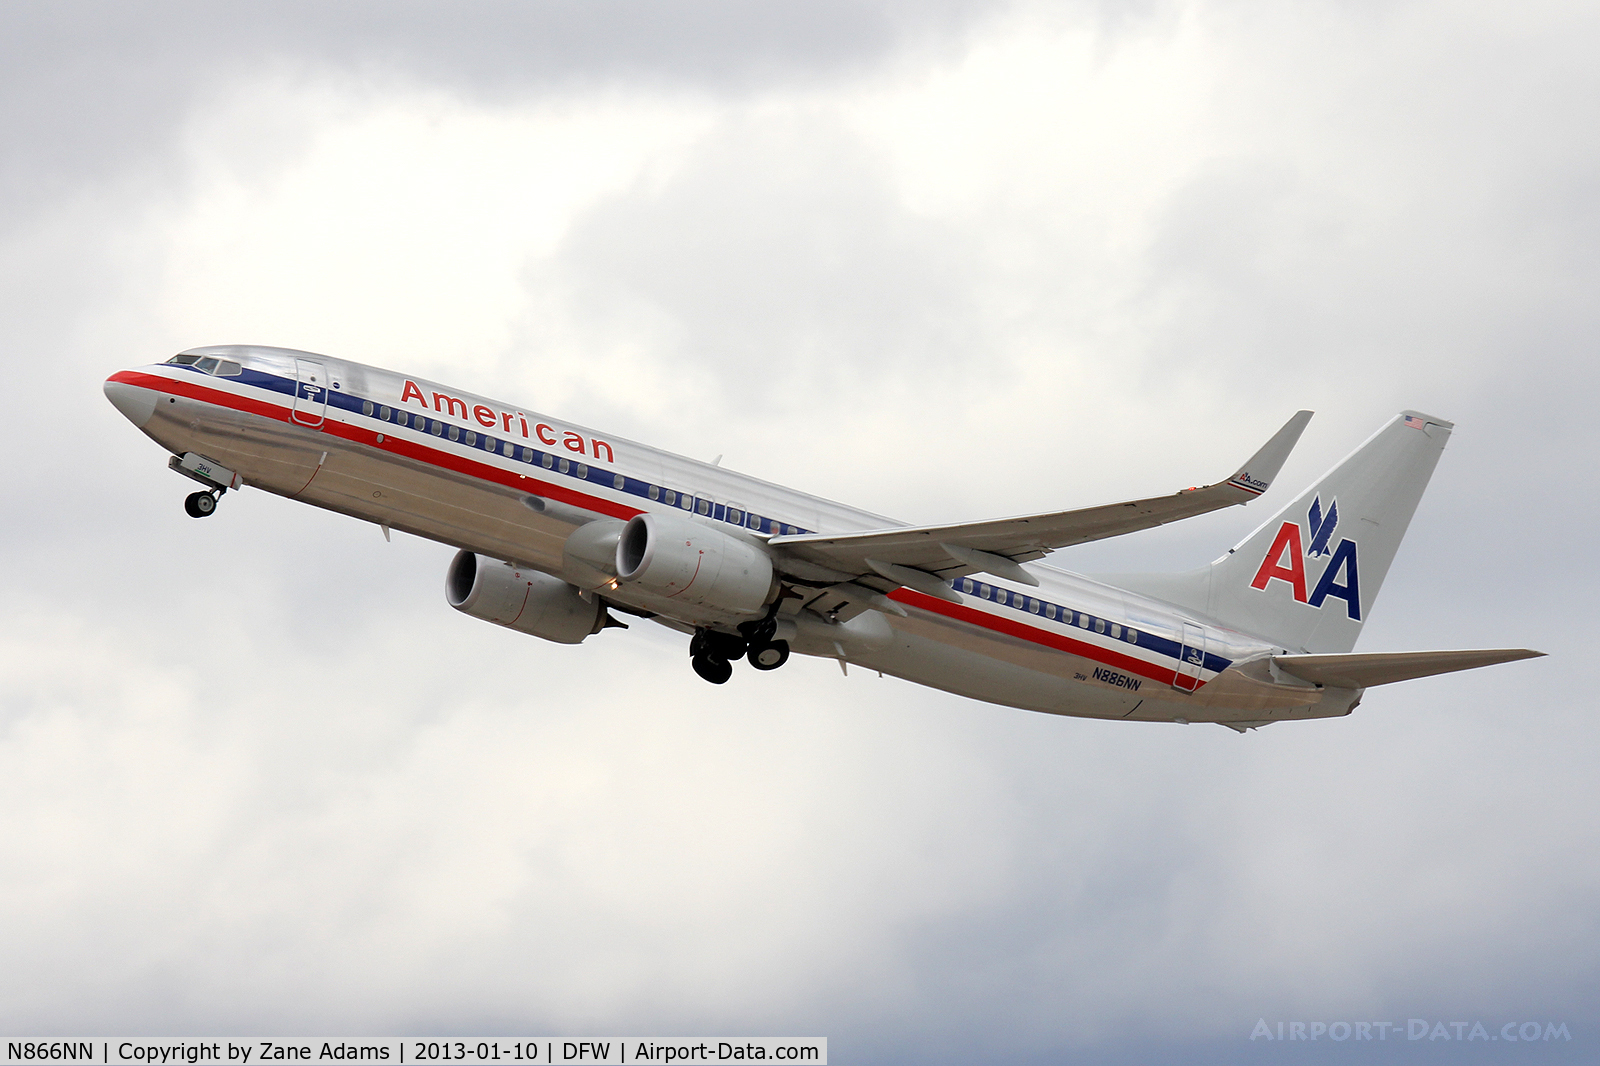 N866NN, 2010 Boeing 737-823 C/N 40584, American Airlines landing at DFW Airport